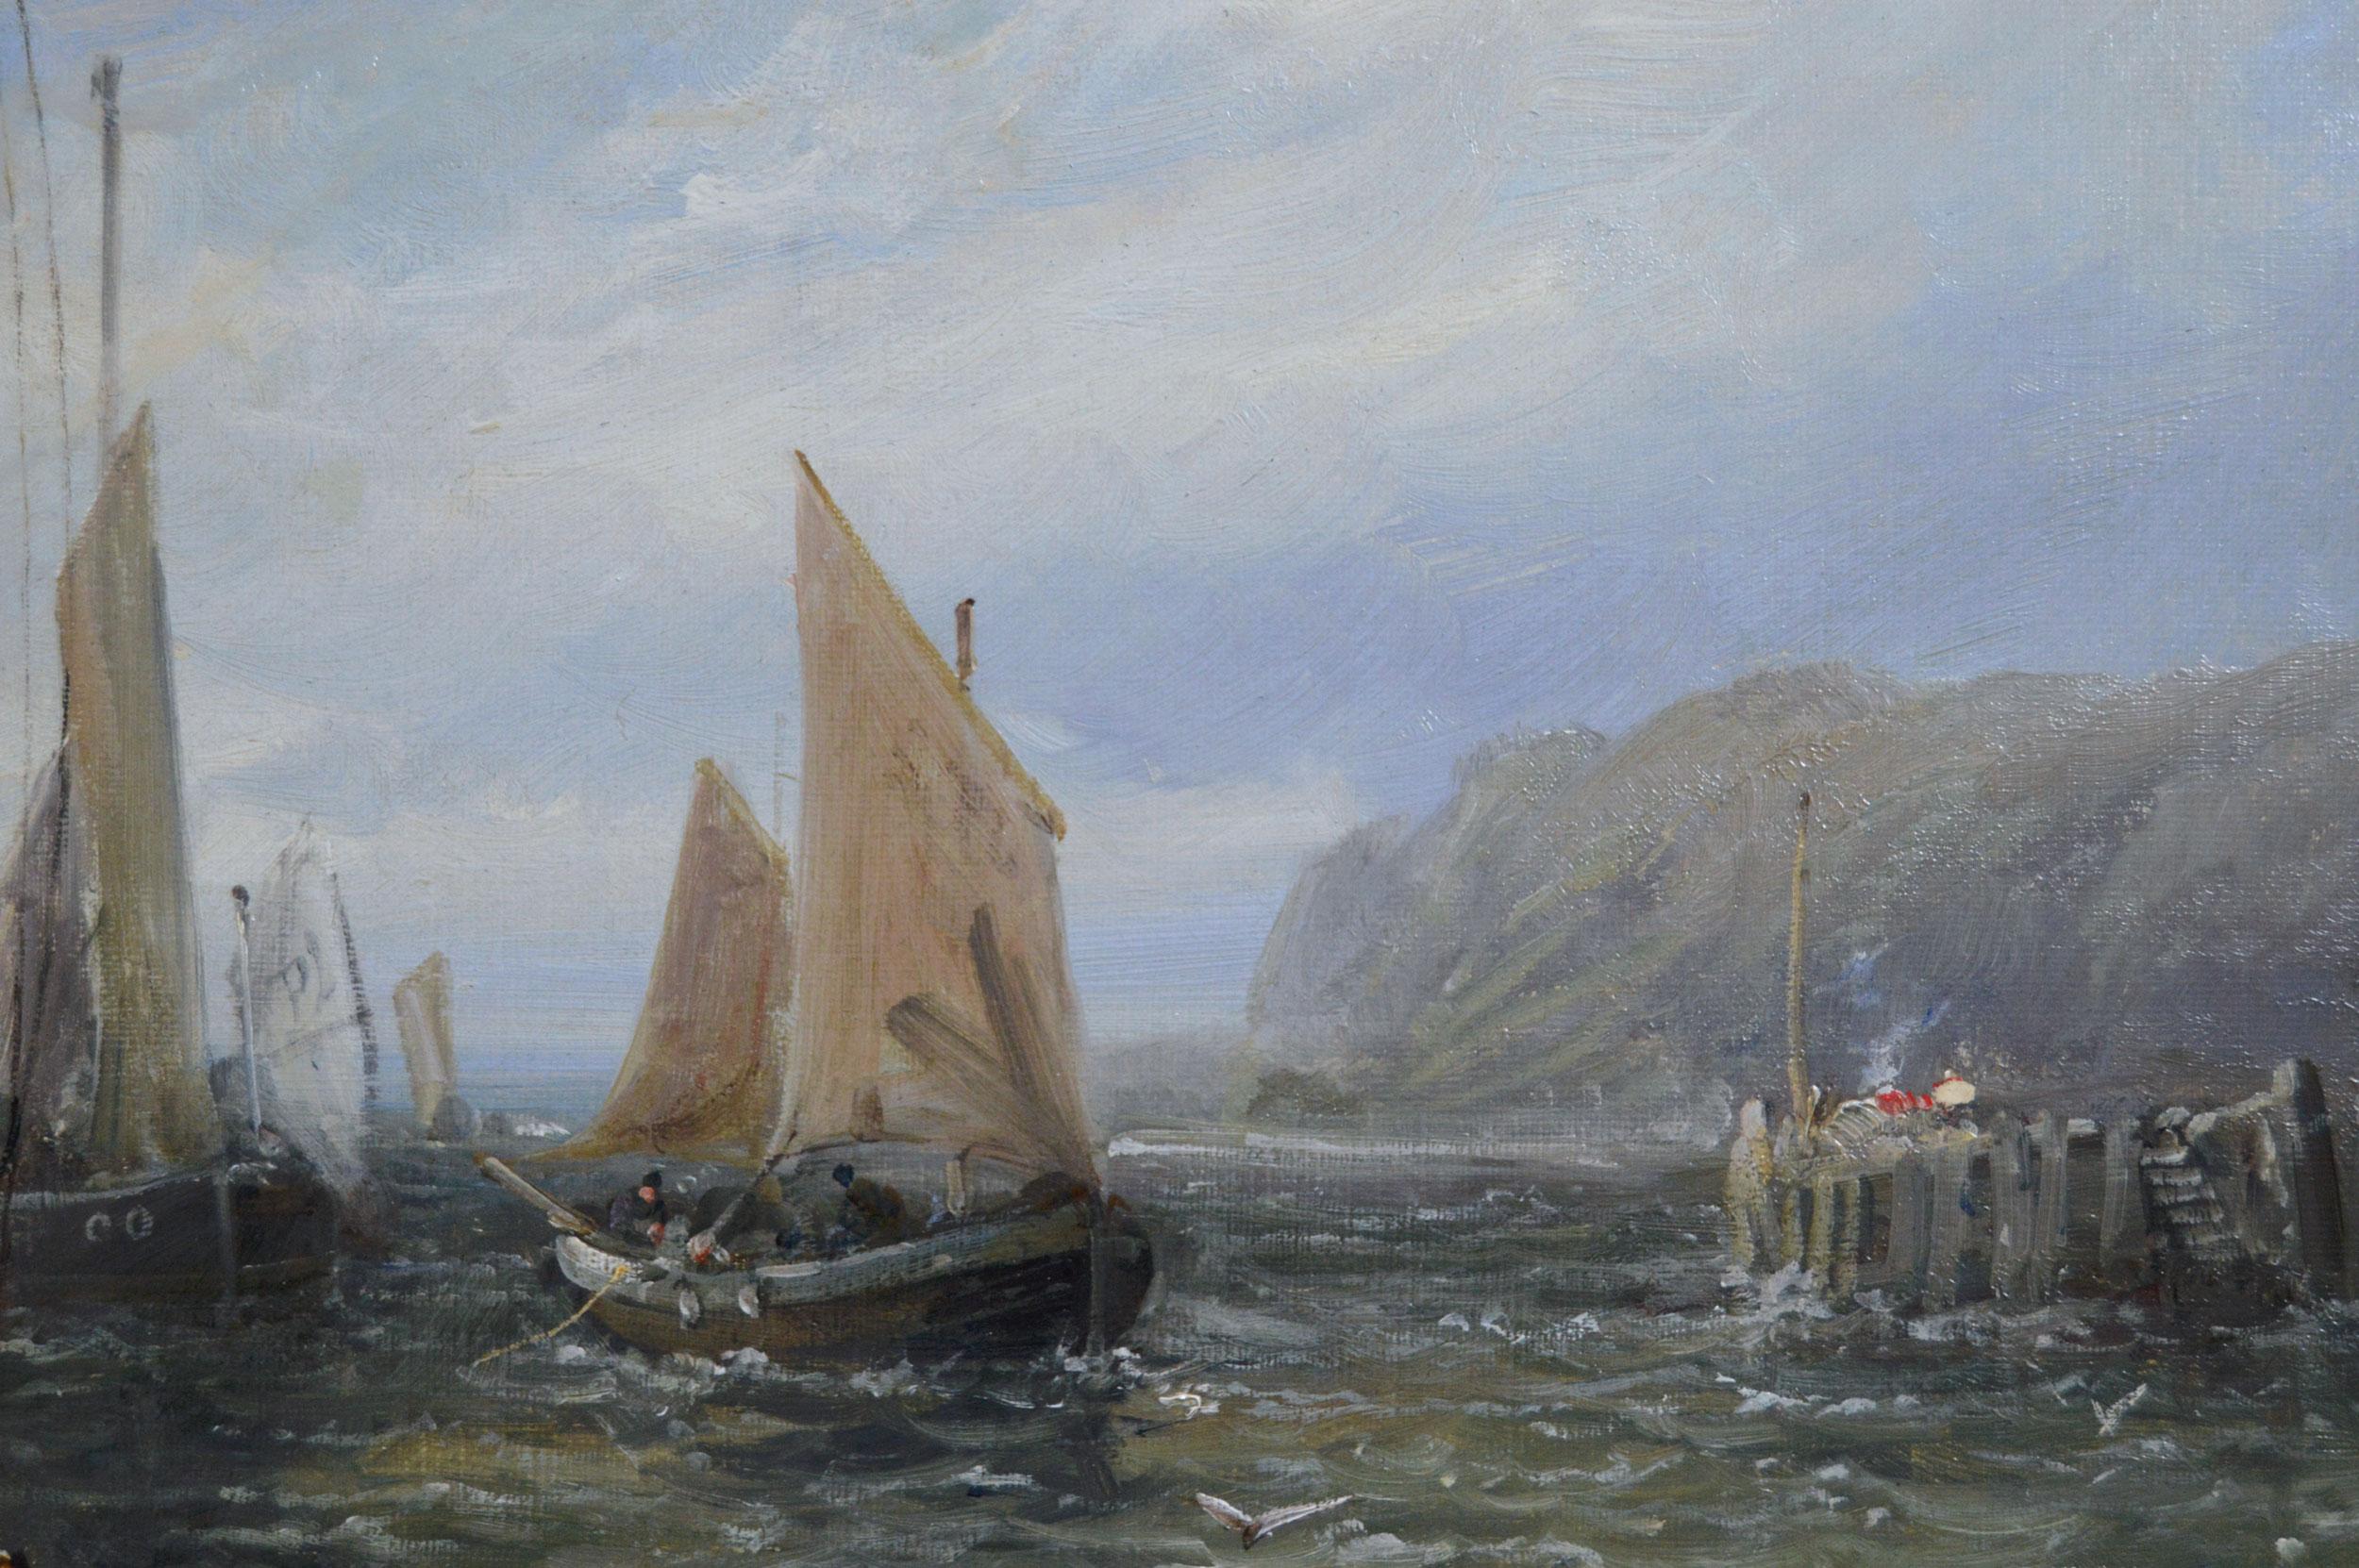 William Edward Webb
Britannique, (1862-1903)
Port de Douglas, île de Man
Huile sur toile, signée
Taille de l'image : 21.5 pouces x 37.5 pouces 
Dimensions, y compris le cadre : 33 pouces x 49 pouces

Peinture de William Edward Webb représentant le